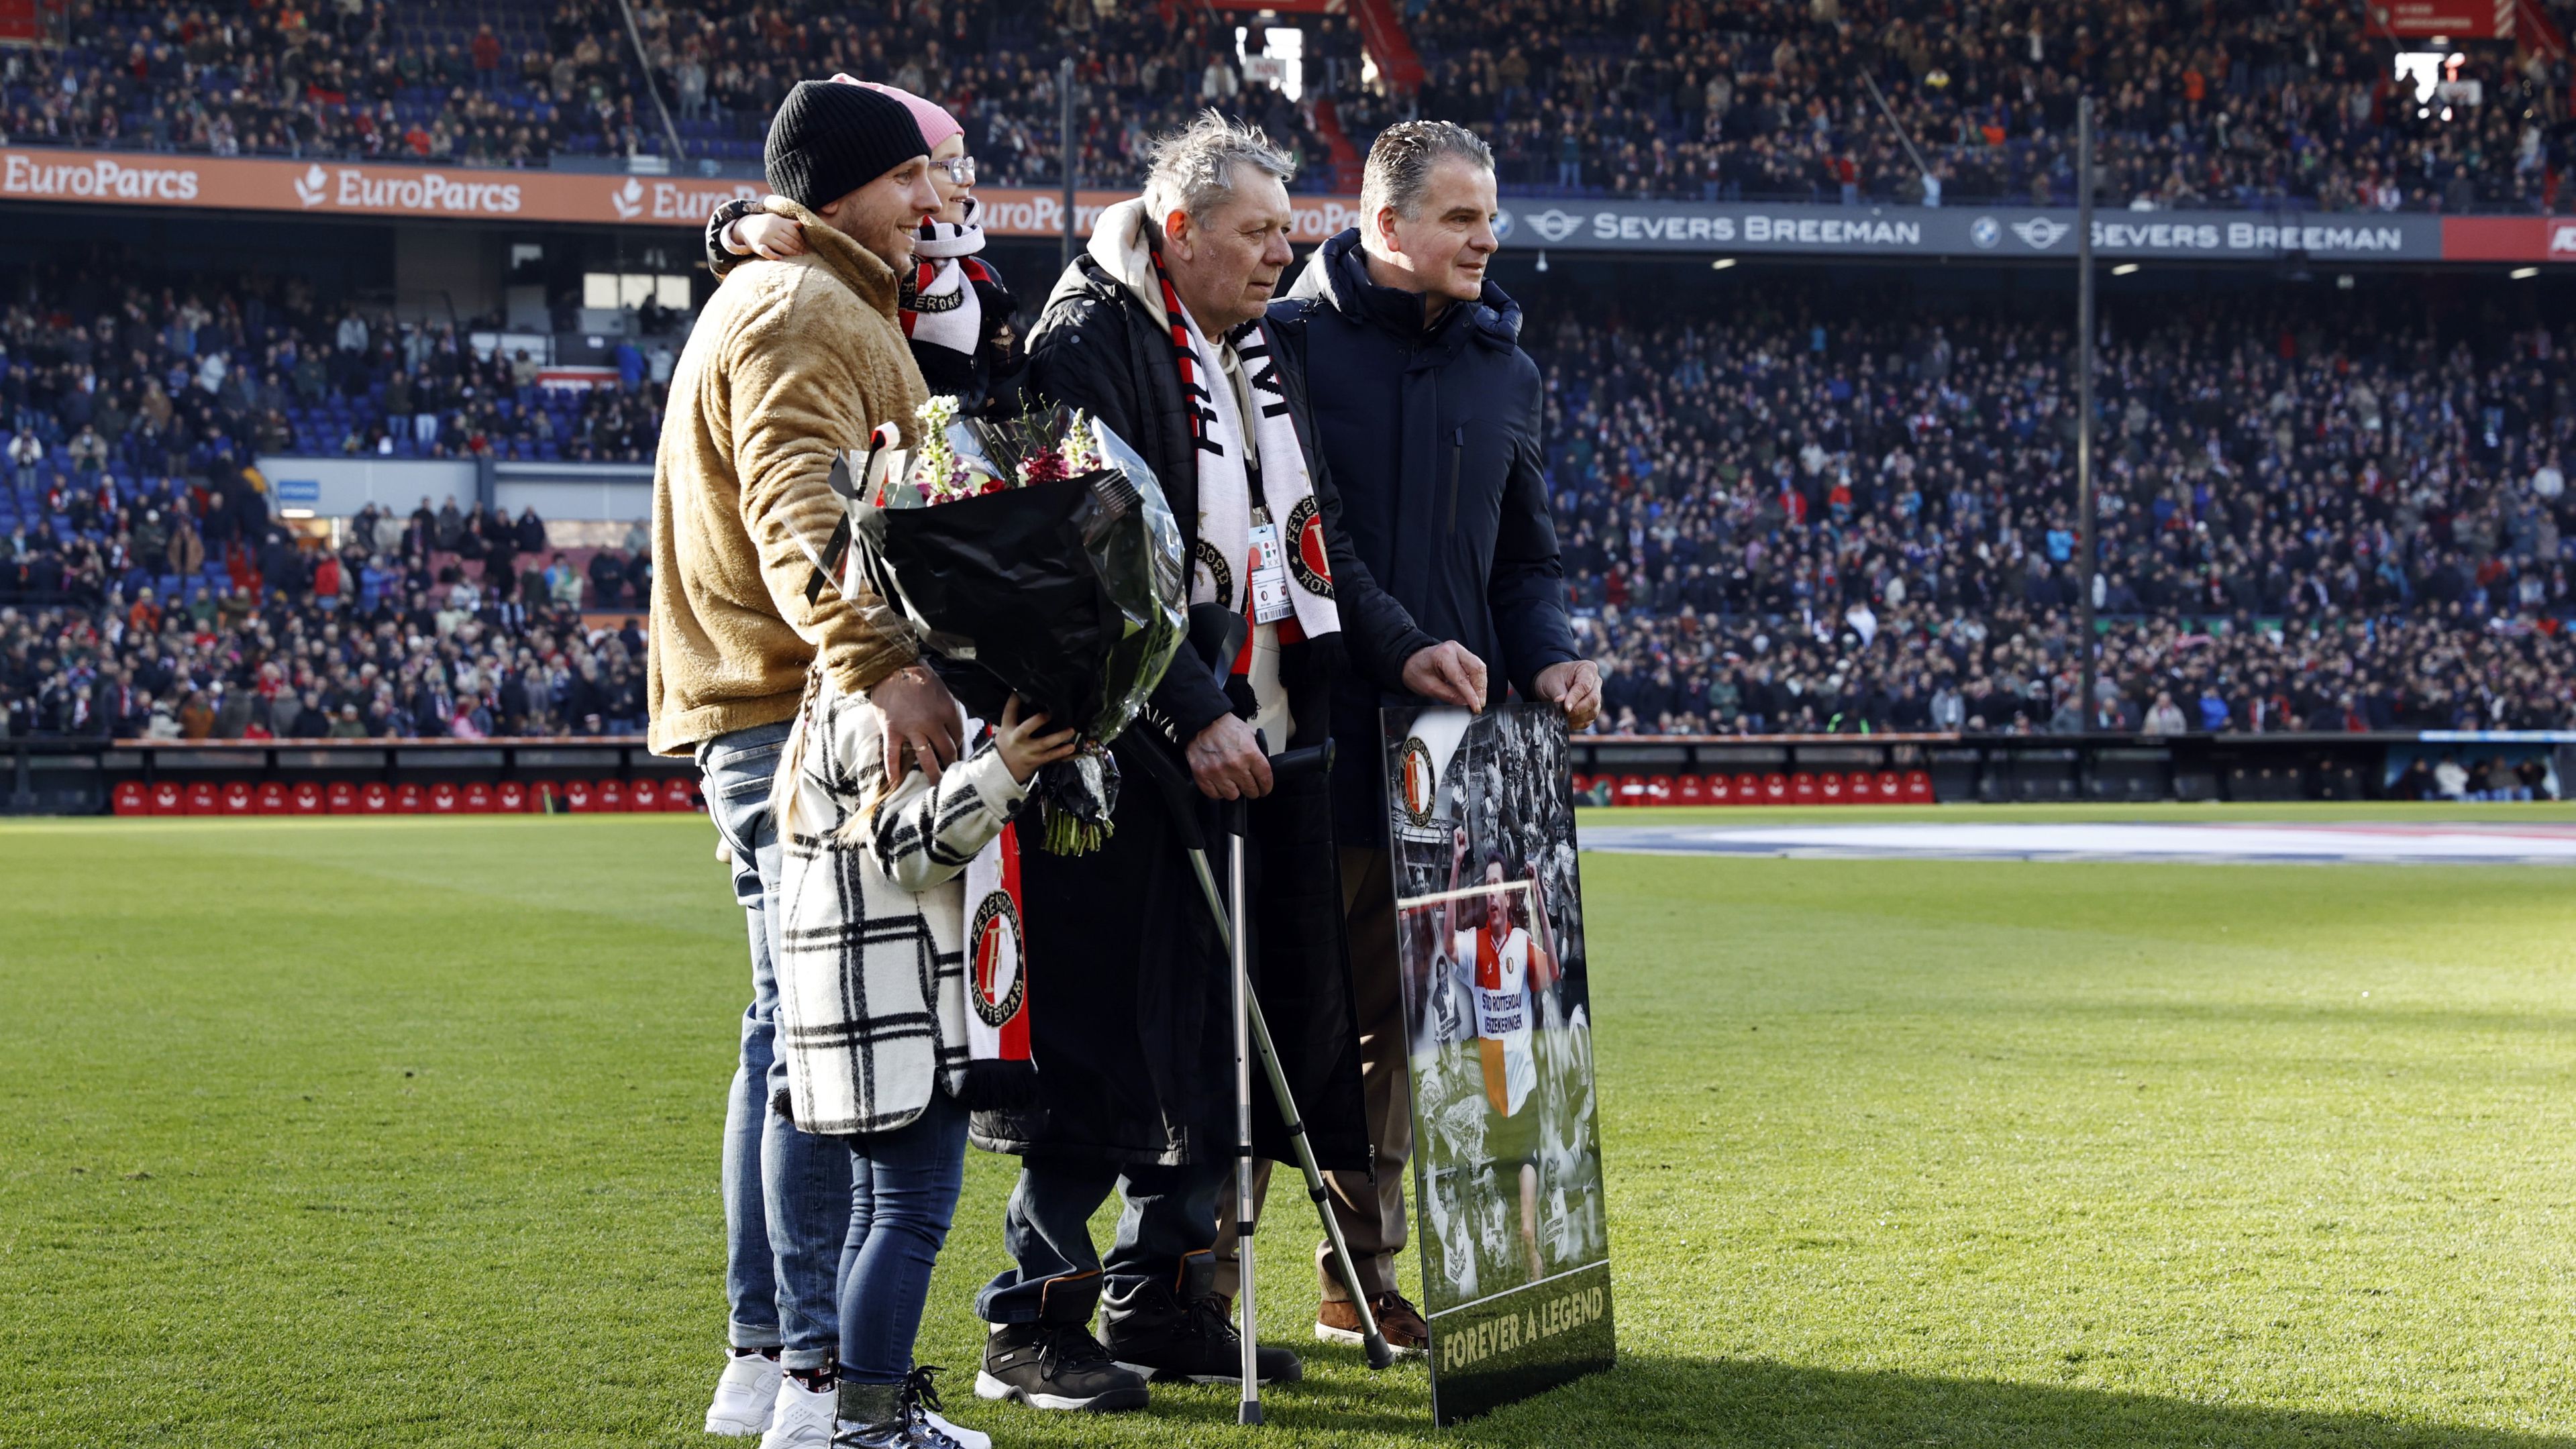 Magyar legendát köszöntöttek a Feyenoord meccse előtt – Fotóval